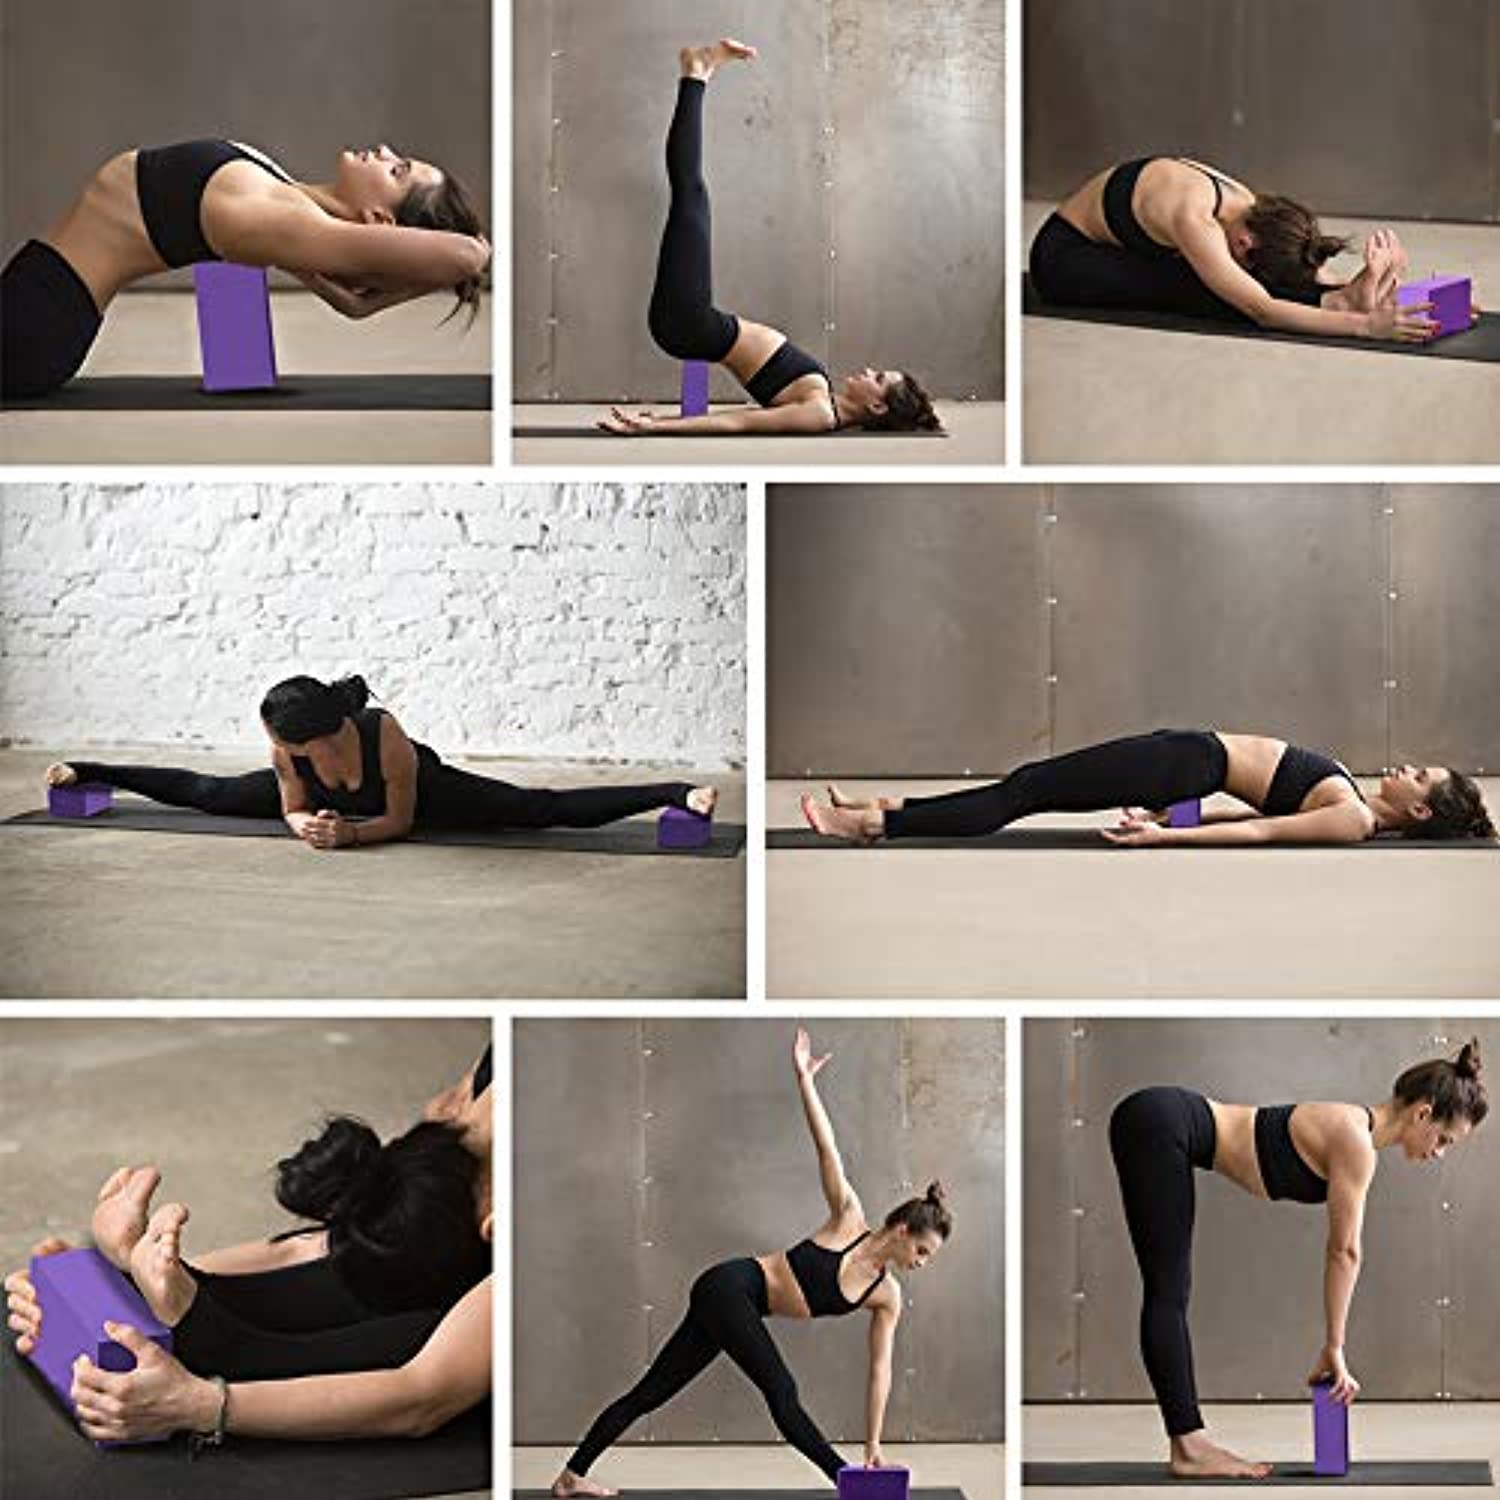  Sunshine Yoga Bloque de yoga de 3 pulgadas, paquete de 10  bloques de yoga de espuma EVA a granel, ladrillo de yoga firme y de apoyo,  espuma de equilibrio para estiramiento